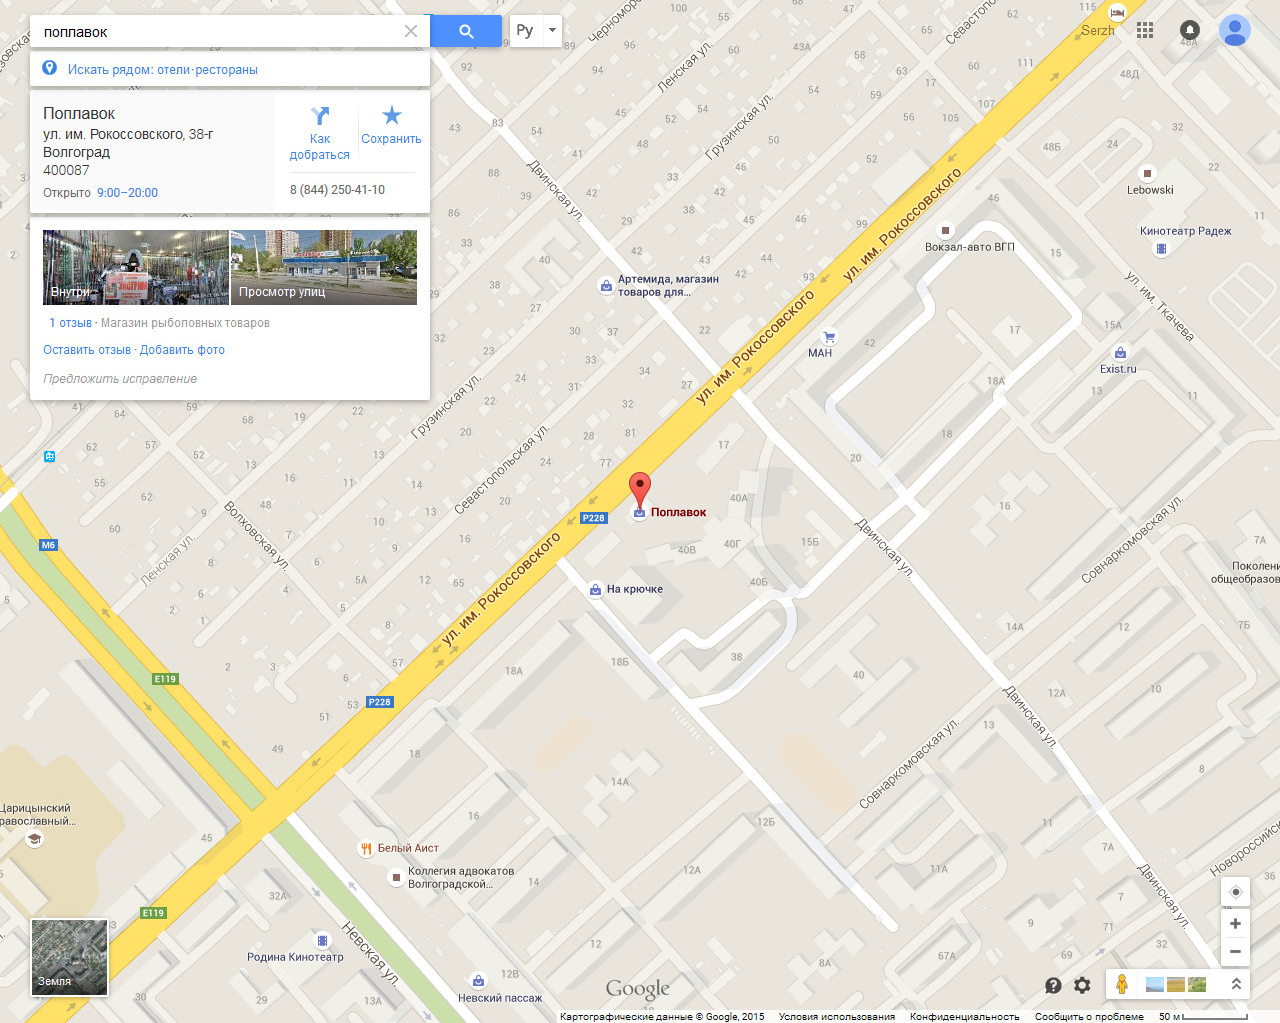 Результат поиска магазина Поплавок на картах Google